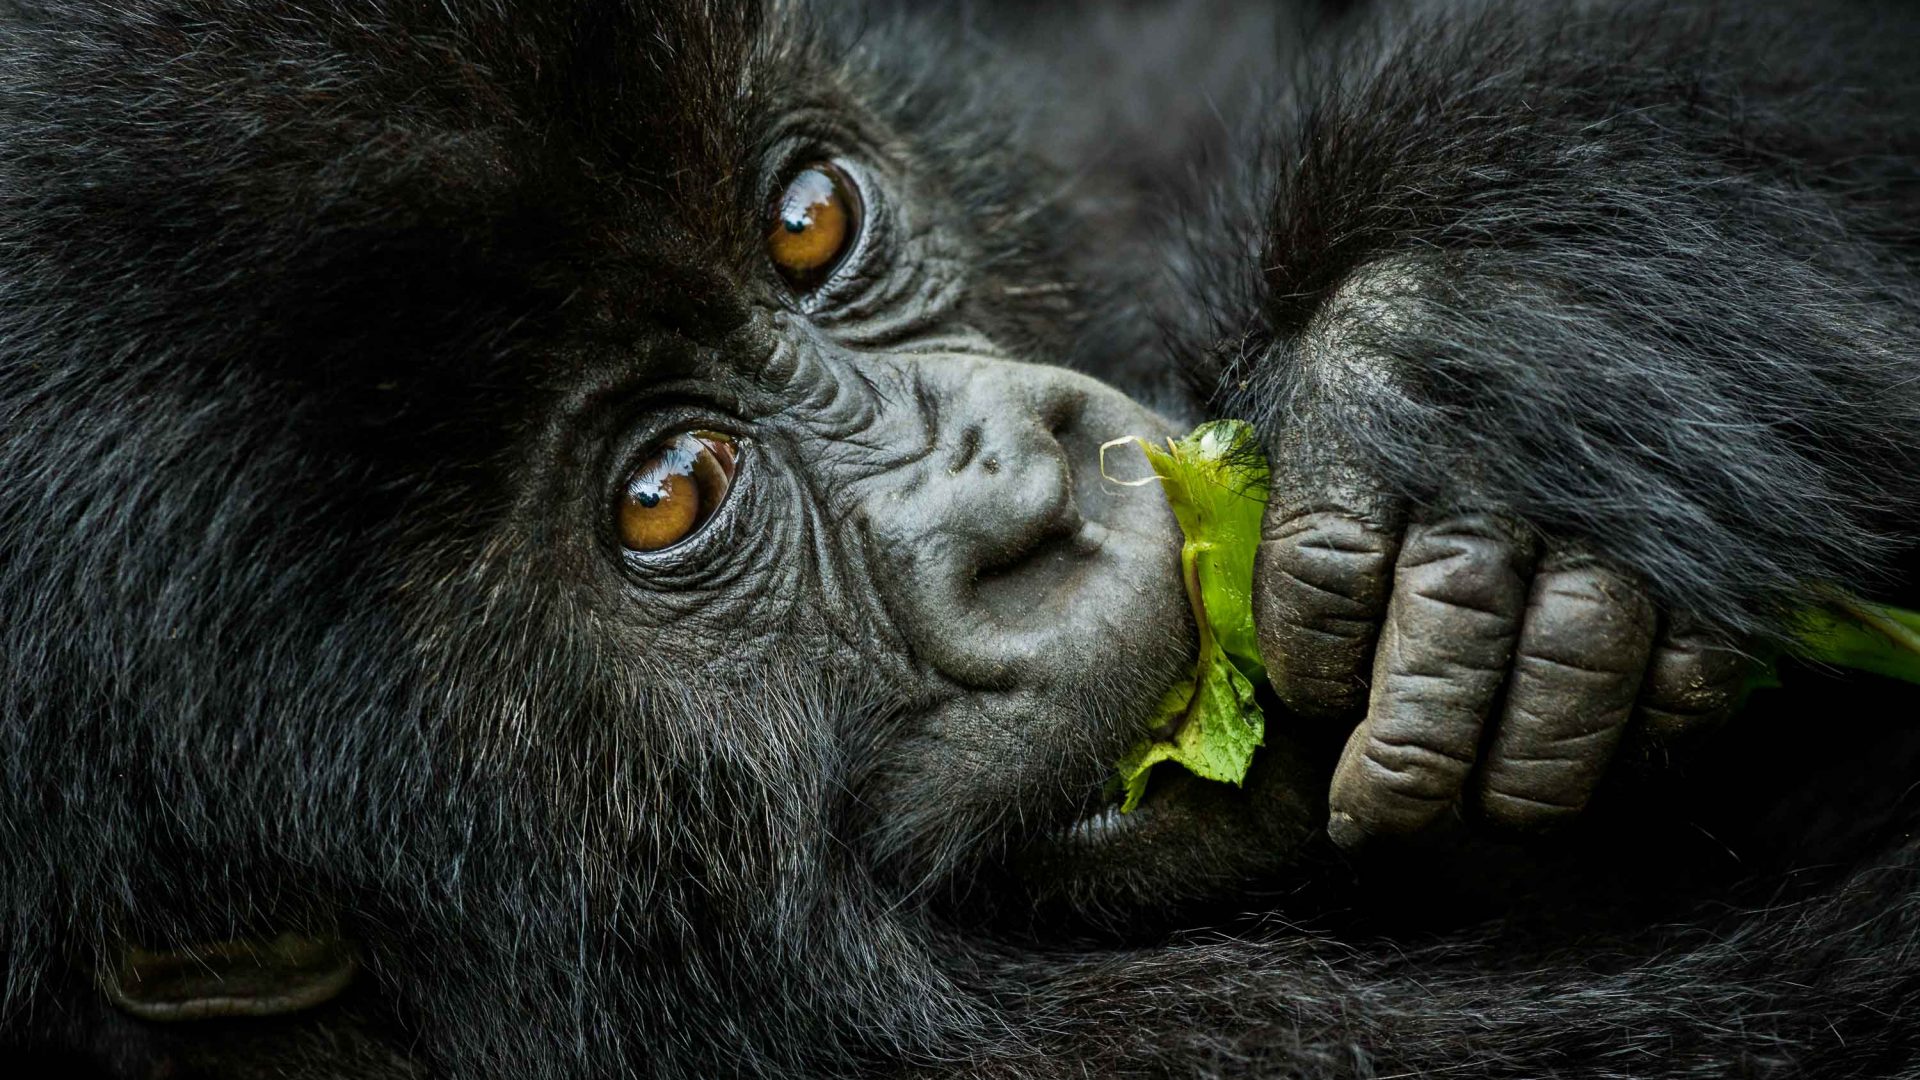 Mountain gorillas are found in Rwanda, Uganda and the Democratic Republic of Congo.